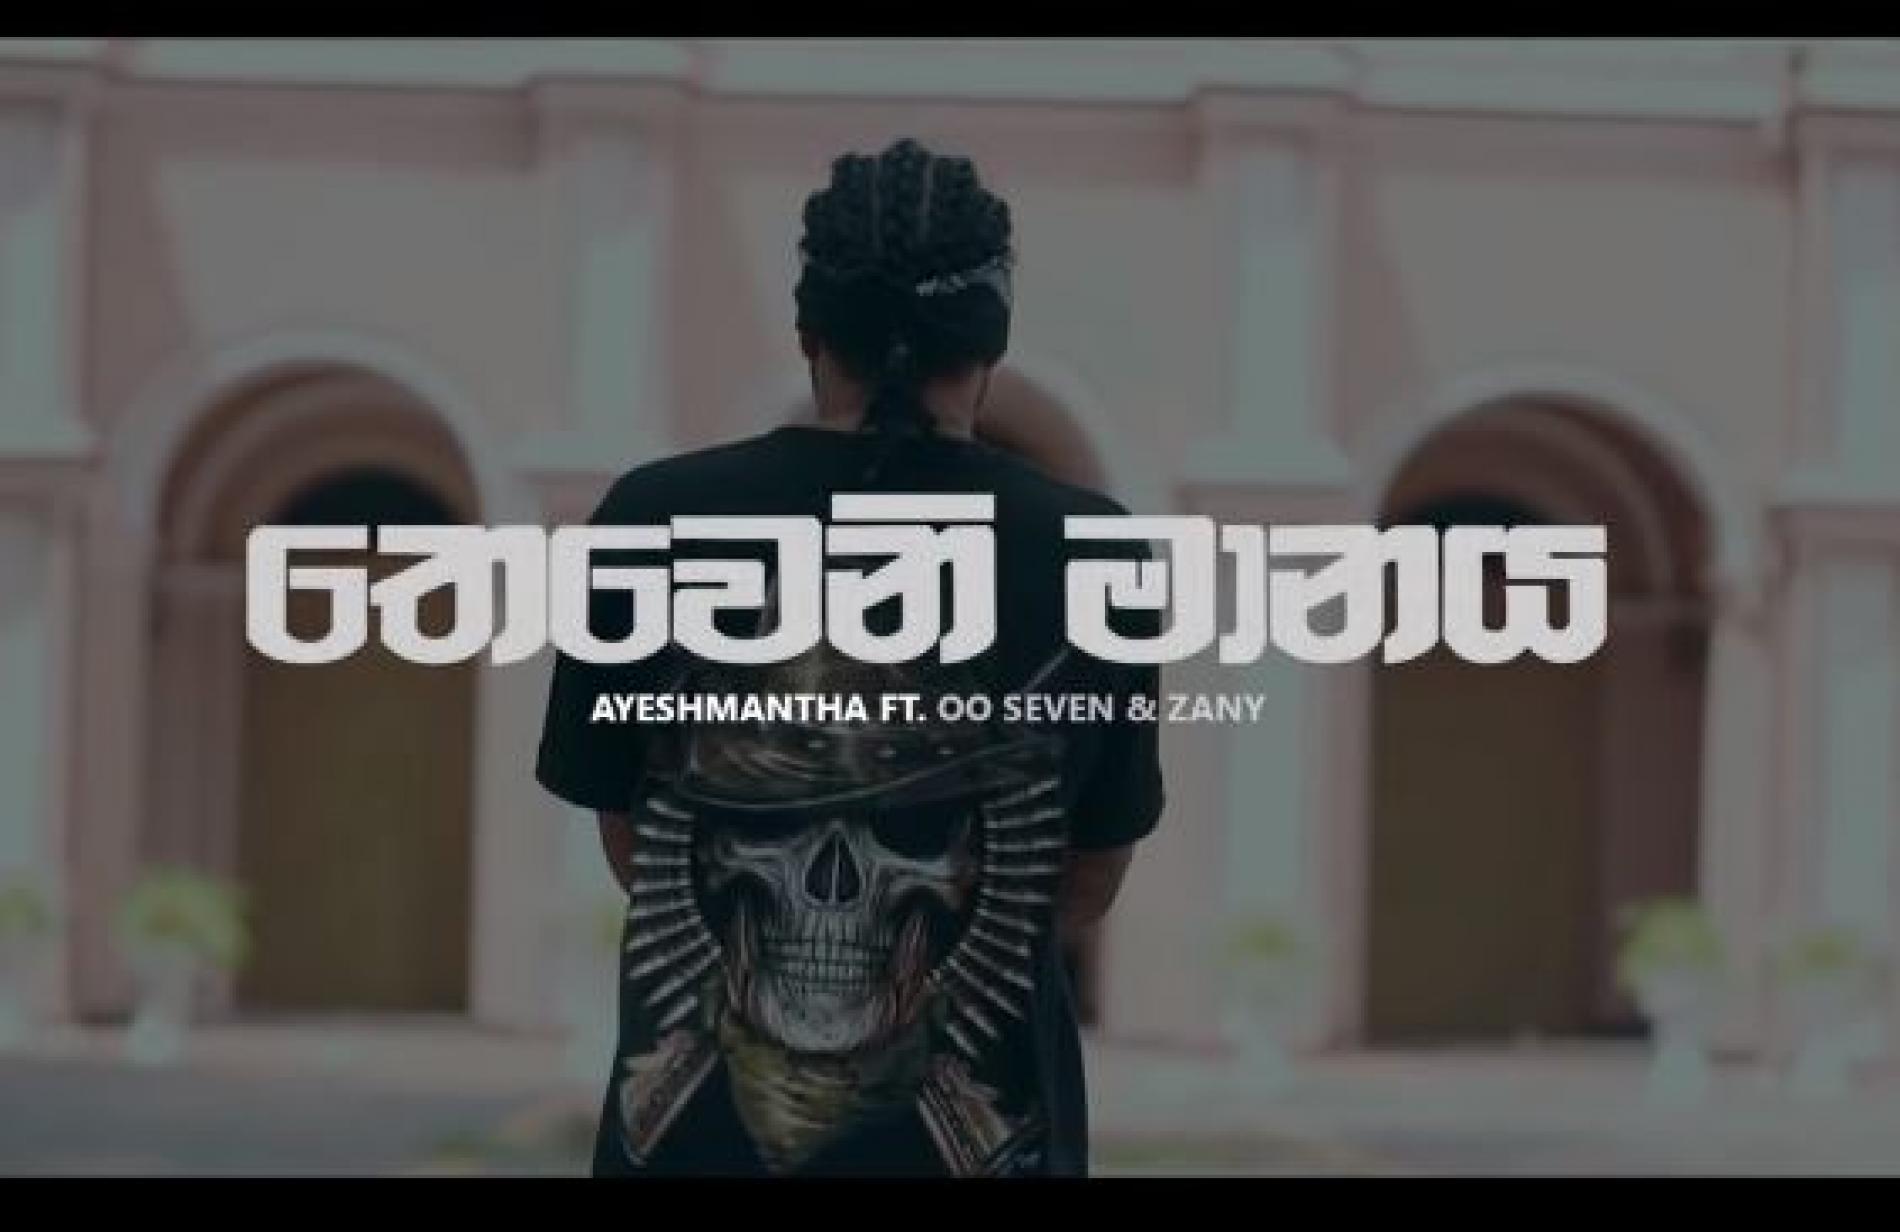 New Music : Ayeshmantha – Theweni Manaya (තෙවෙනි මානය) ft OOSeven & Zany Inzane (Official Music Video)